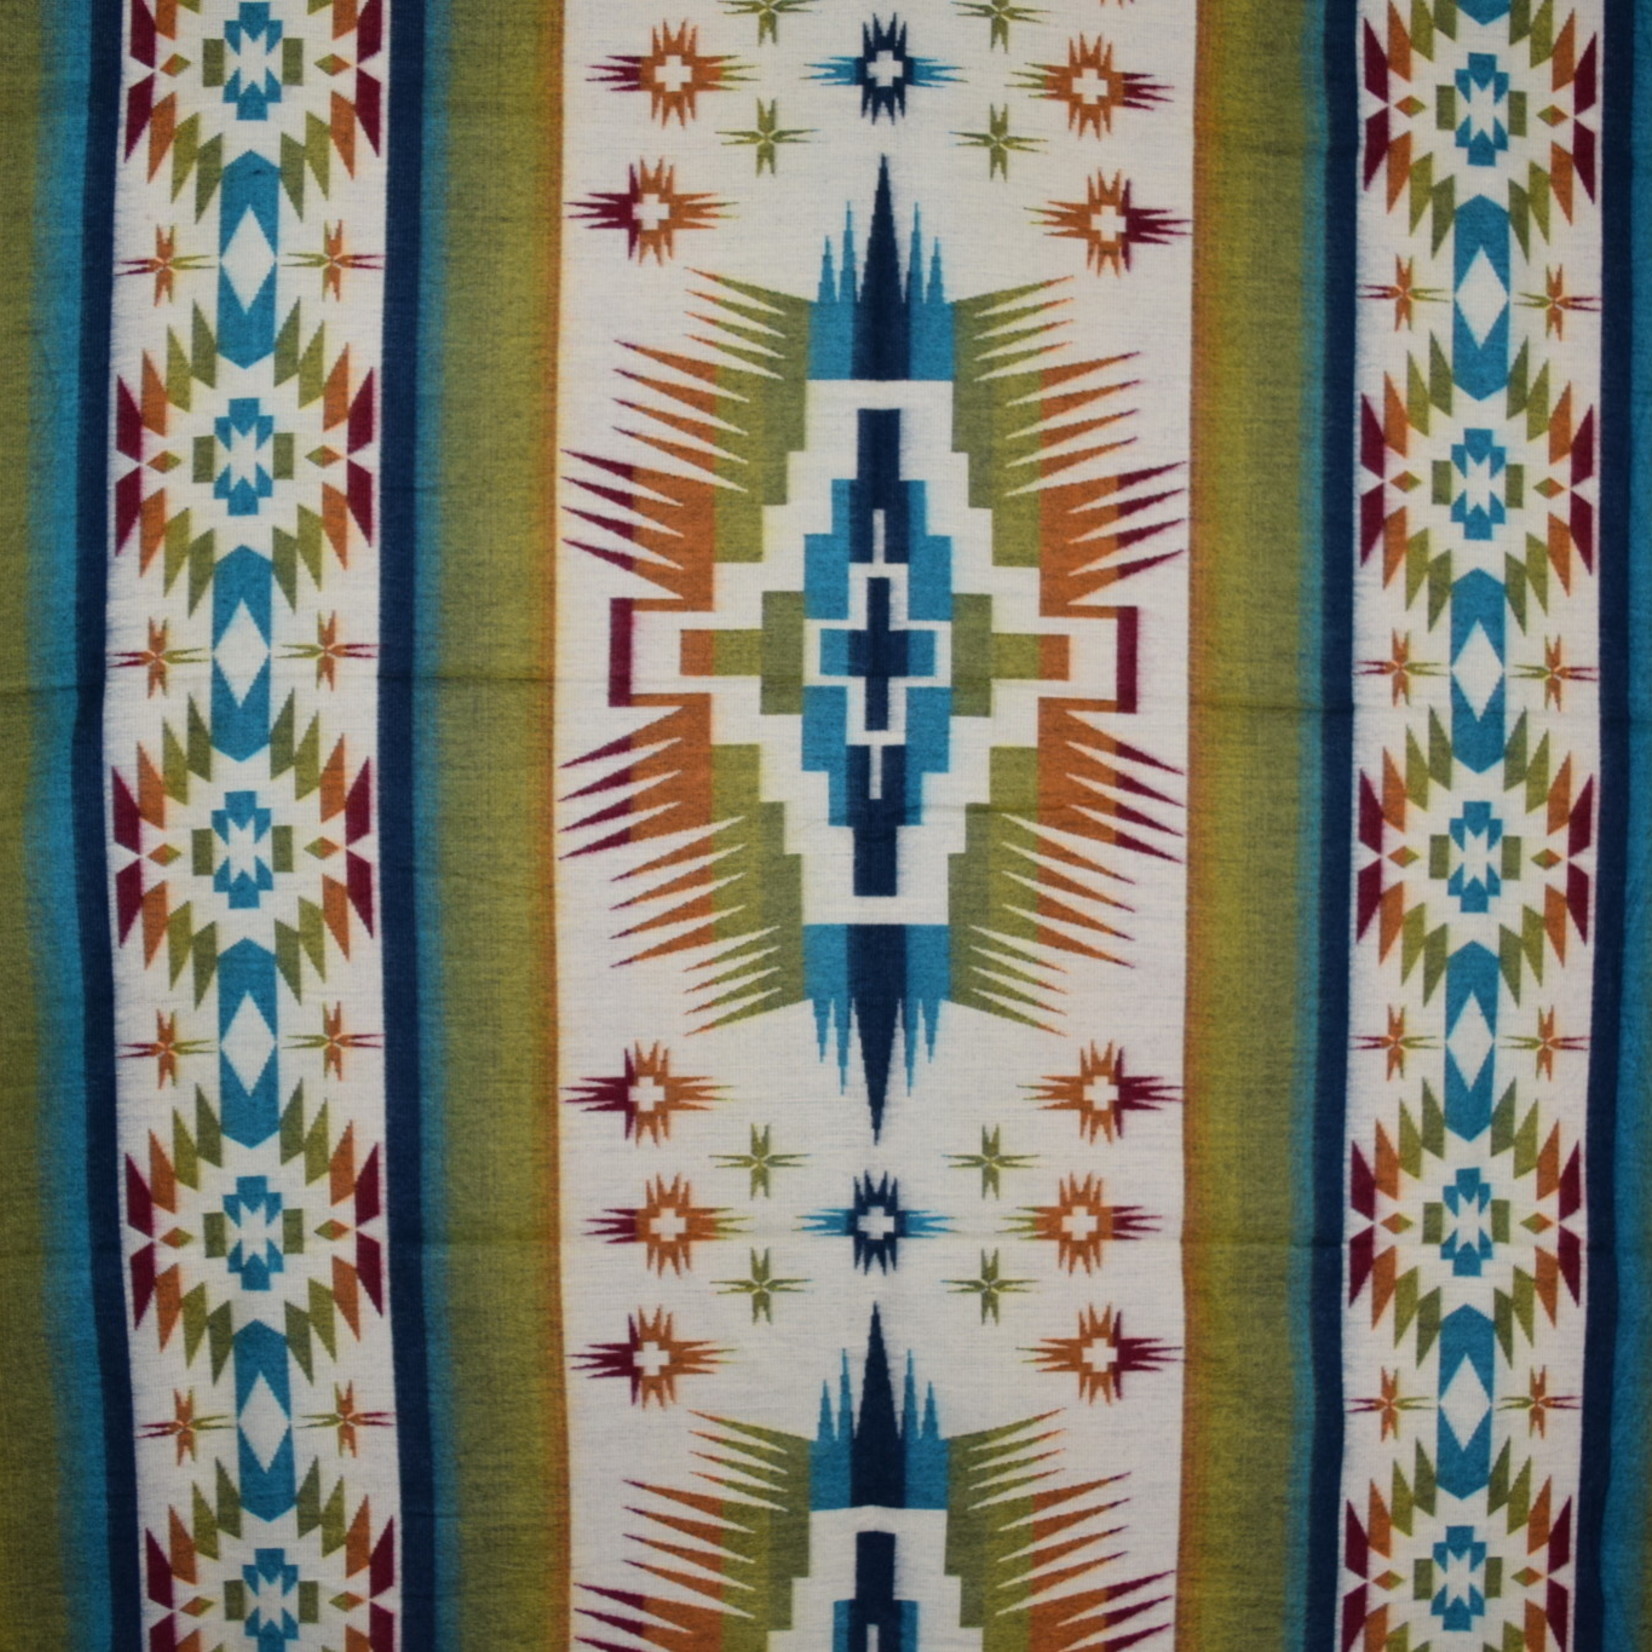 Wool Blankets - Teal Border Thread